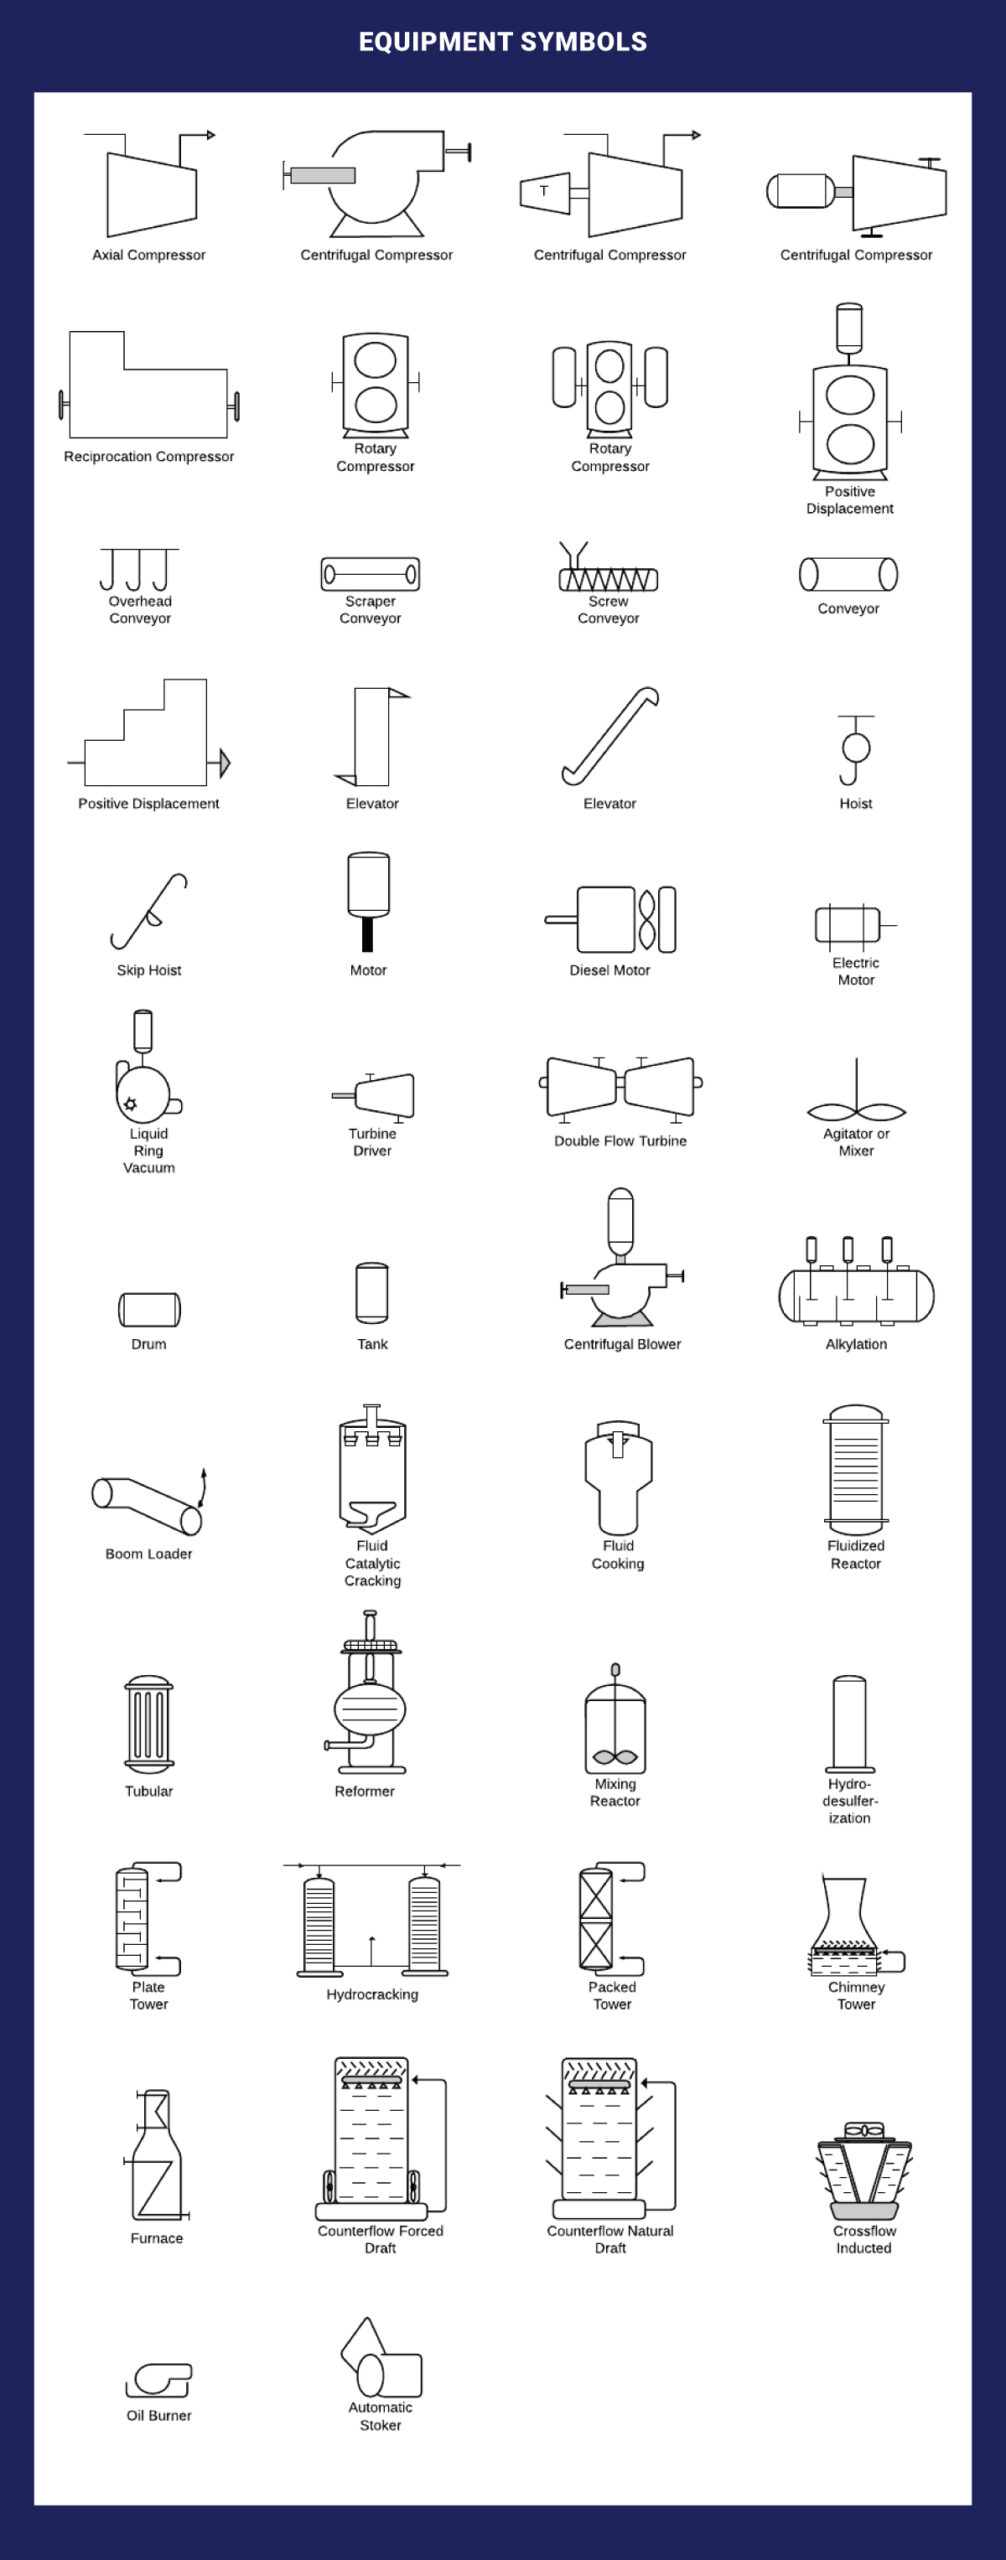 Equipment P&ID Symbols